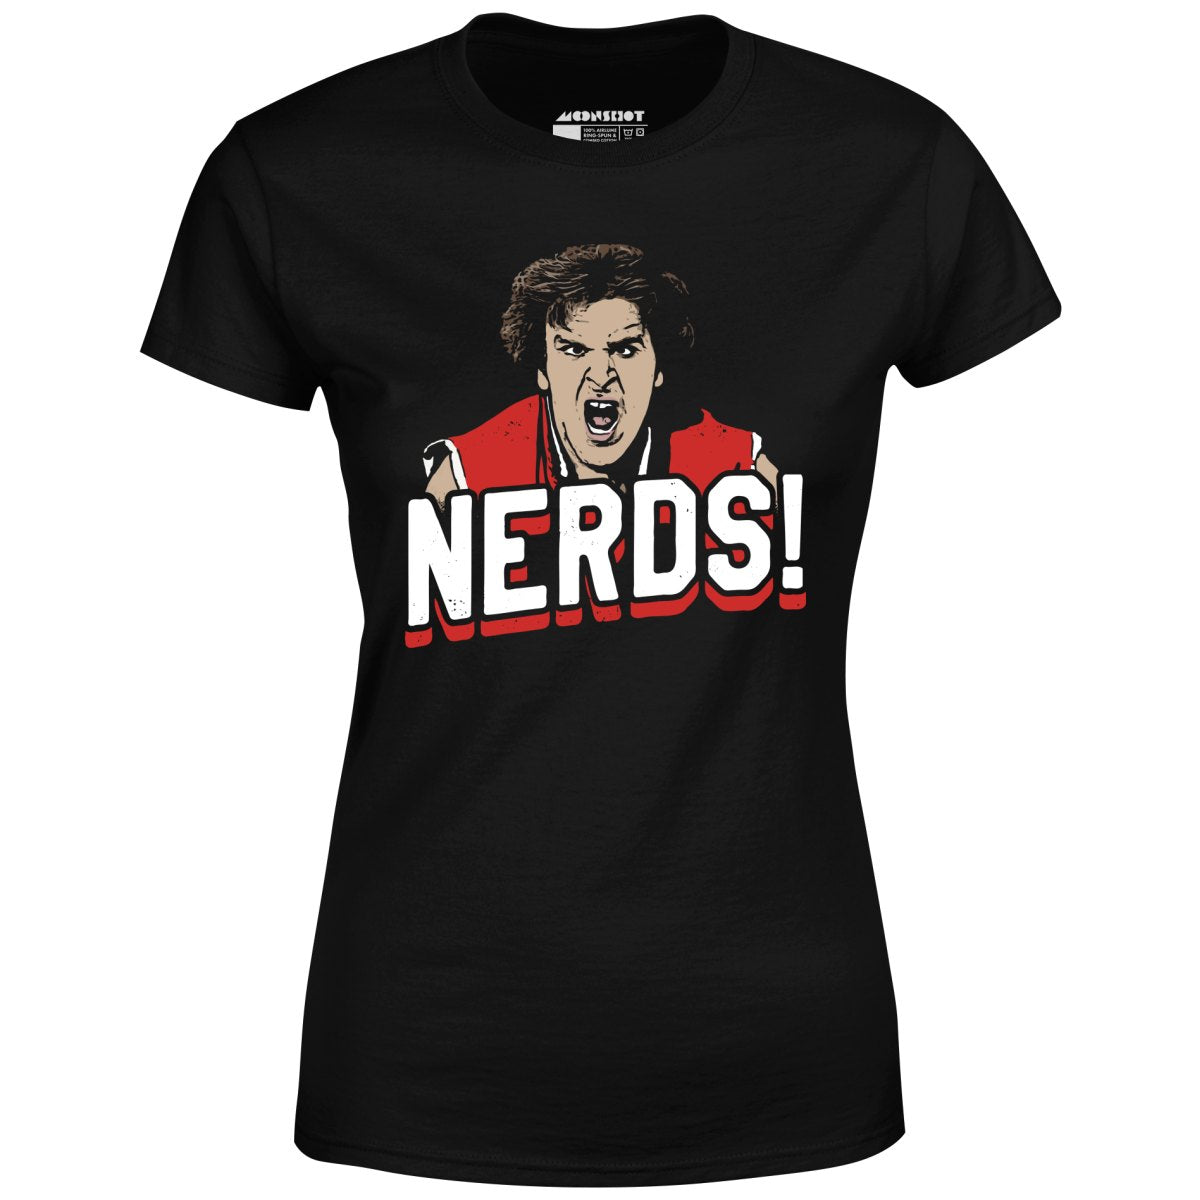 Nerds! - Women's T-Shirt